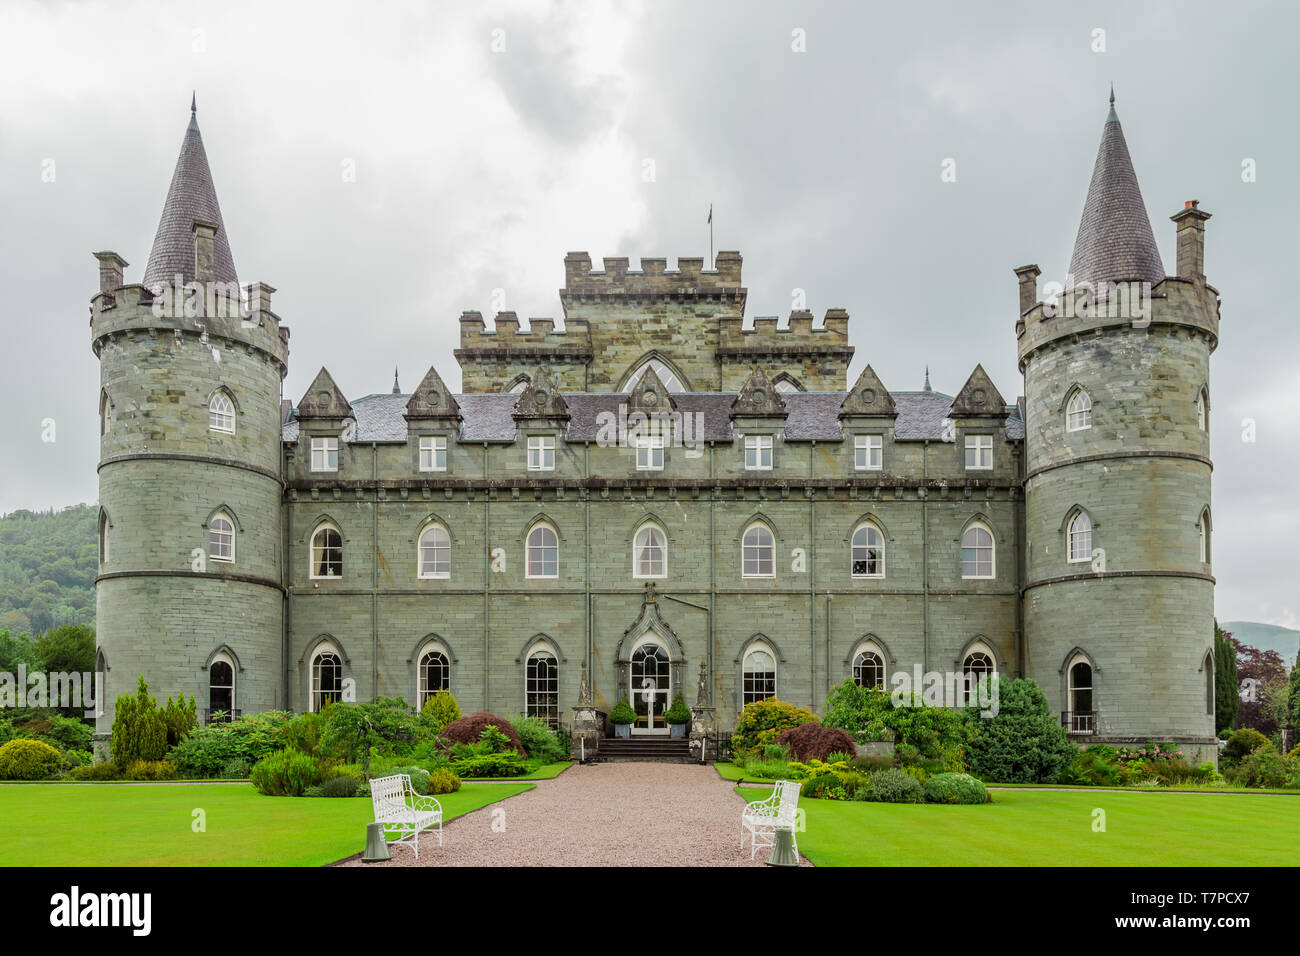 Inveraray, Scotland, June 29, 2016: Inveraray Castle, the ancestral home of the Duke of Argyle. Stock Photo